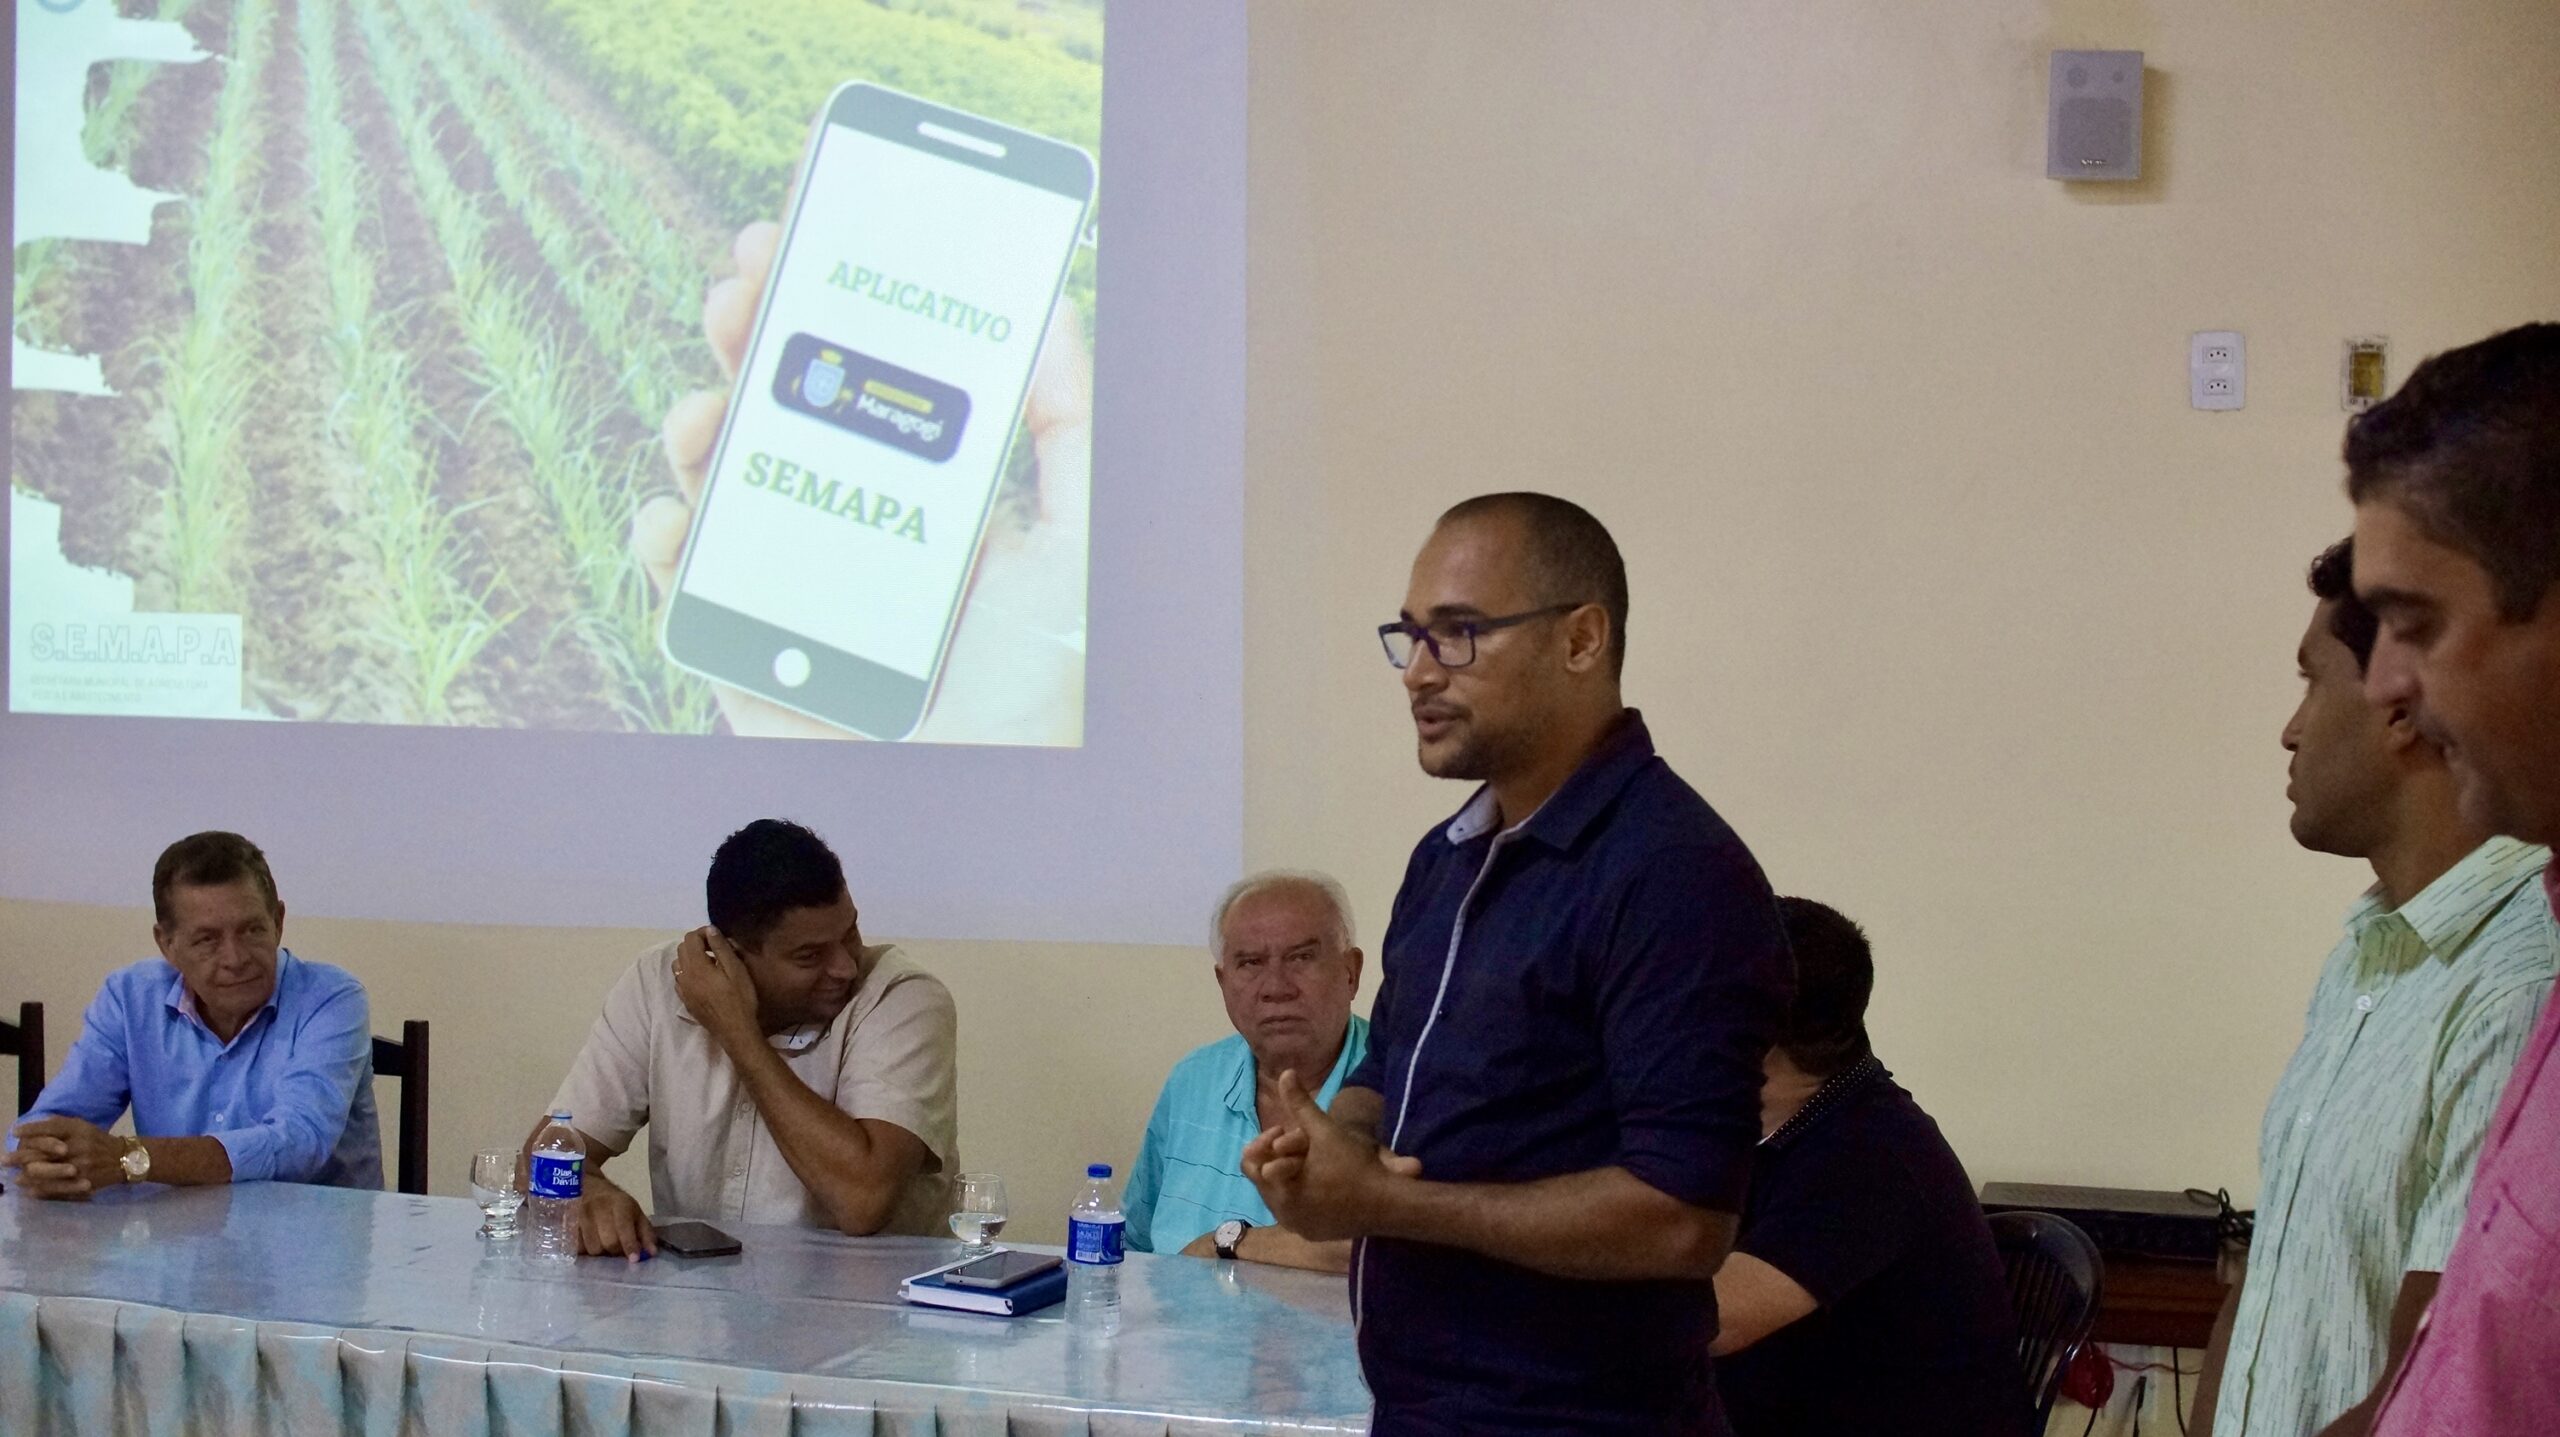 Secretaria de Agricultura lança aplicativo para produtores rurais da cidade